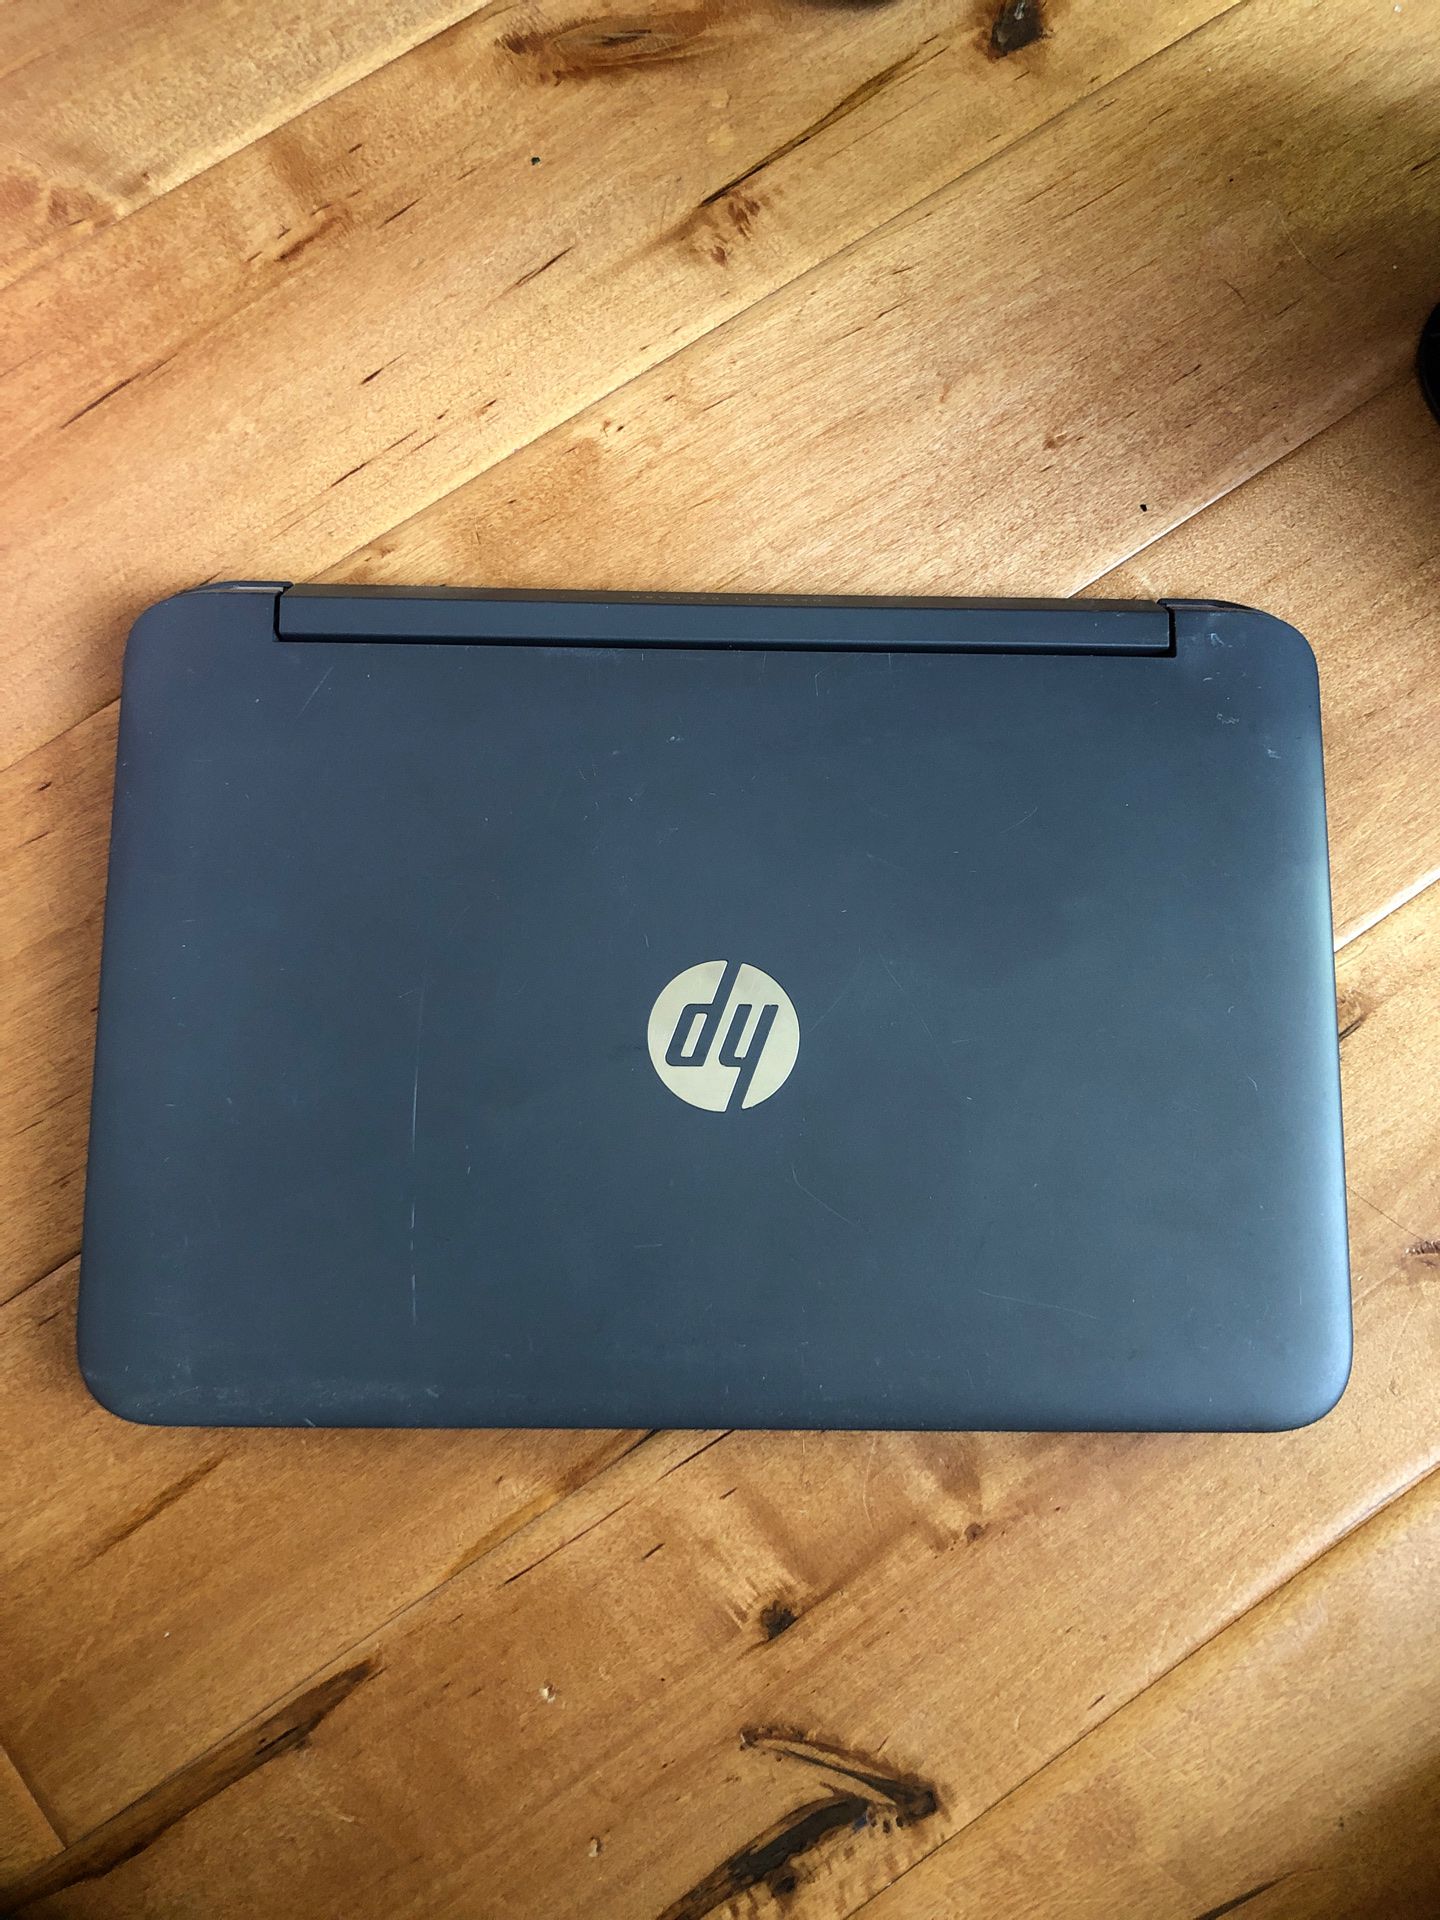 HP pavilion beats laptop